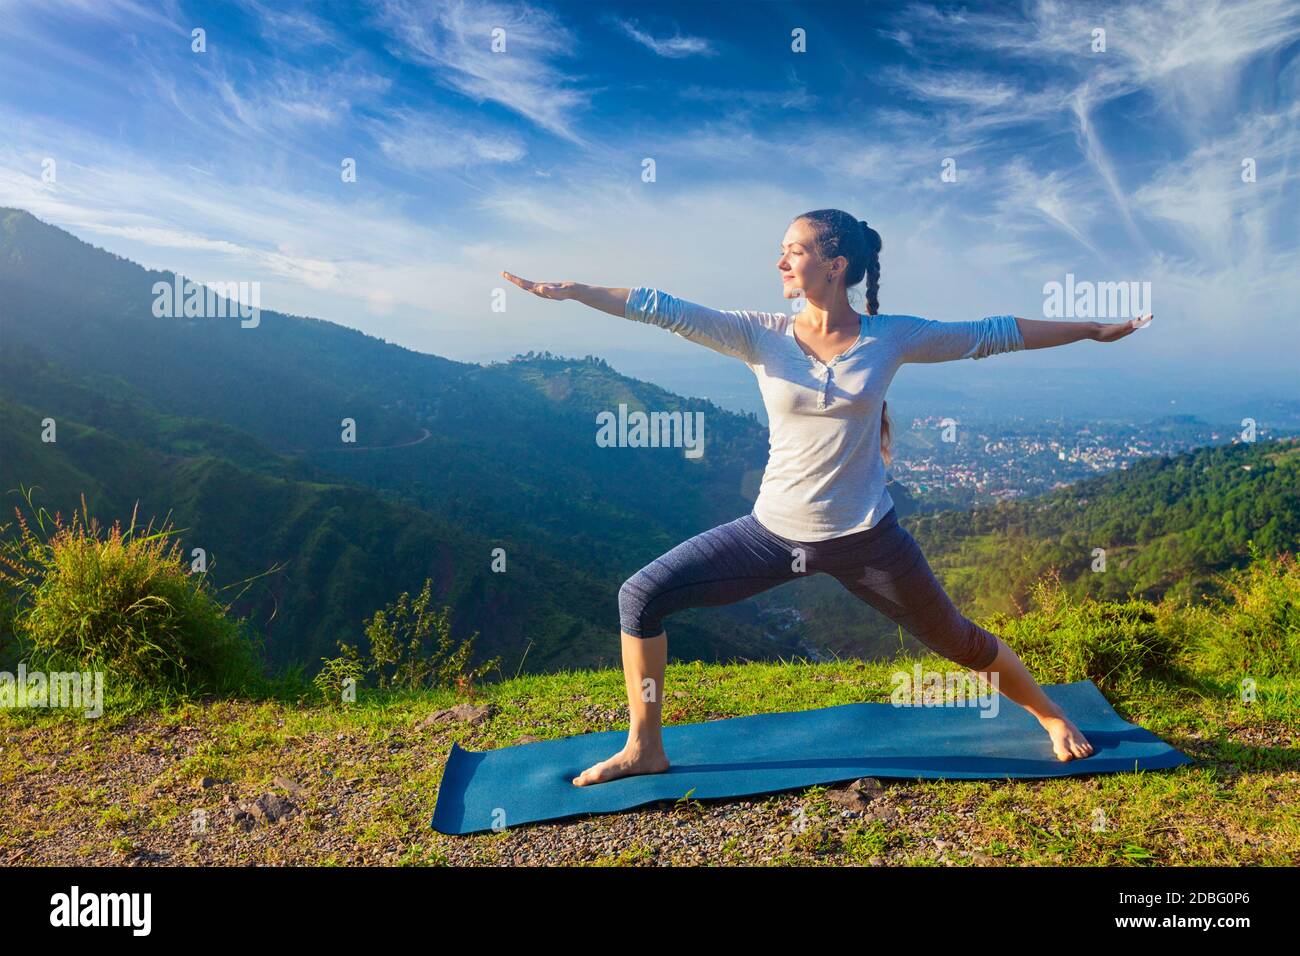 Yoga à l'extérieur - femme sportive faisant yoga asana Virabhadrasana 2 - posture du guerrier en plein air dans les montagnes de l'Himalaya dans le matin Banque D'Images